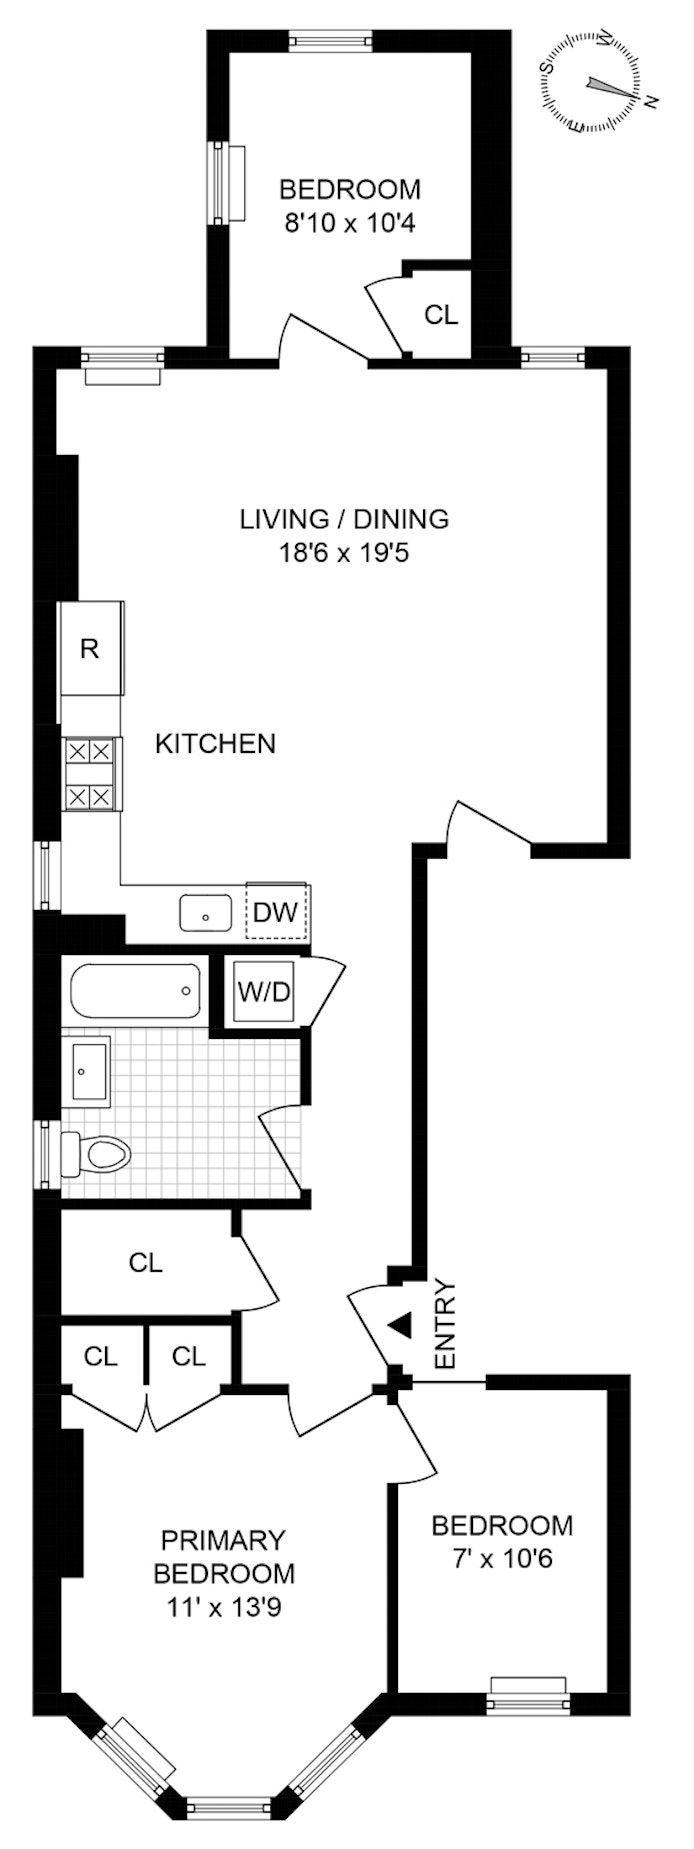 Floorplan for 49 Sutton Street, 3